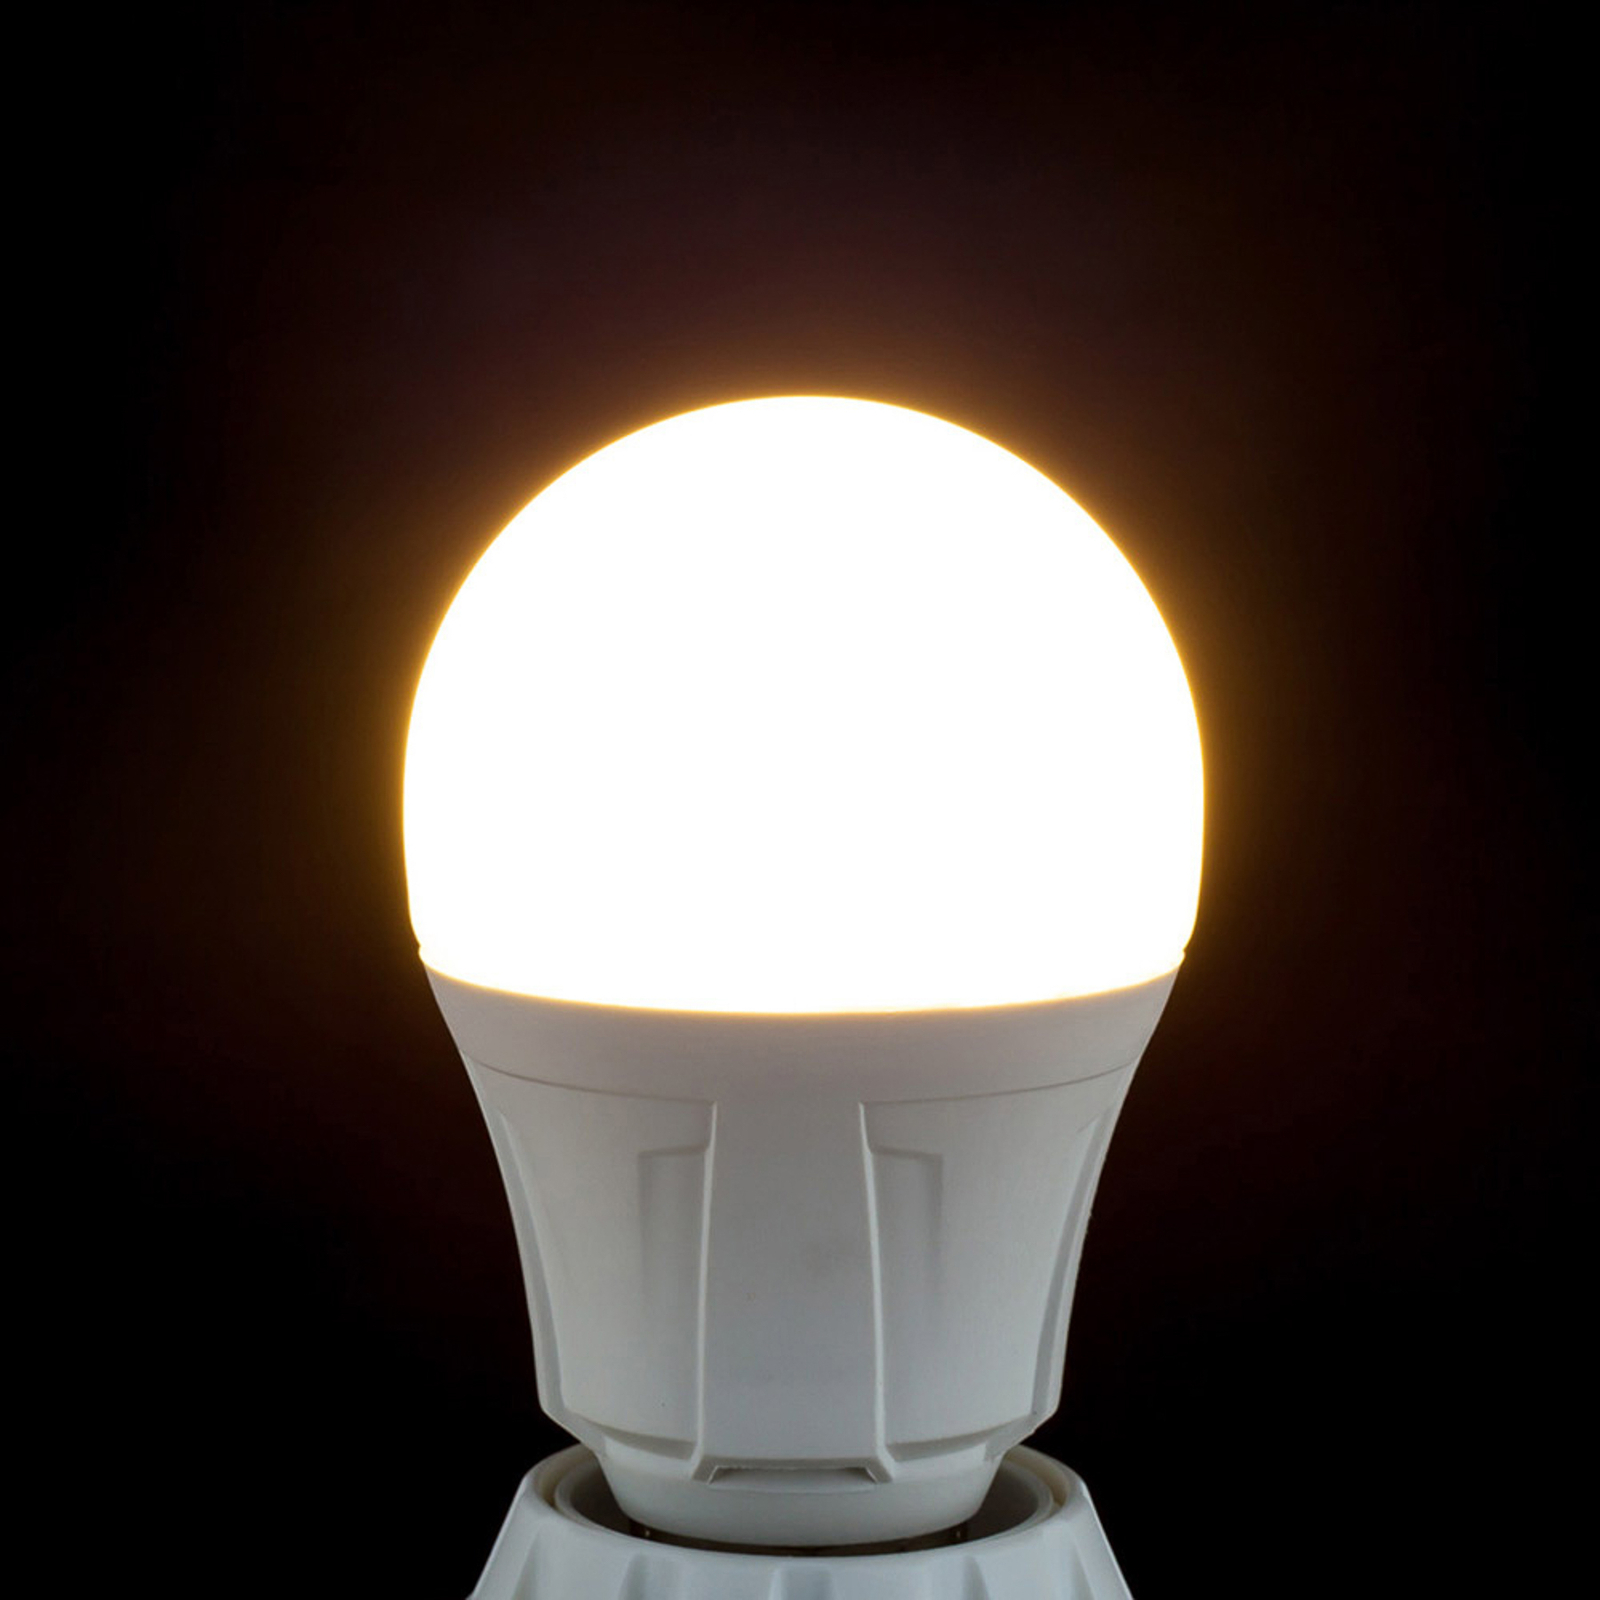 LED žárovka tvar žárovky E27 11W 830 sada3ks